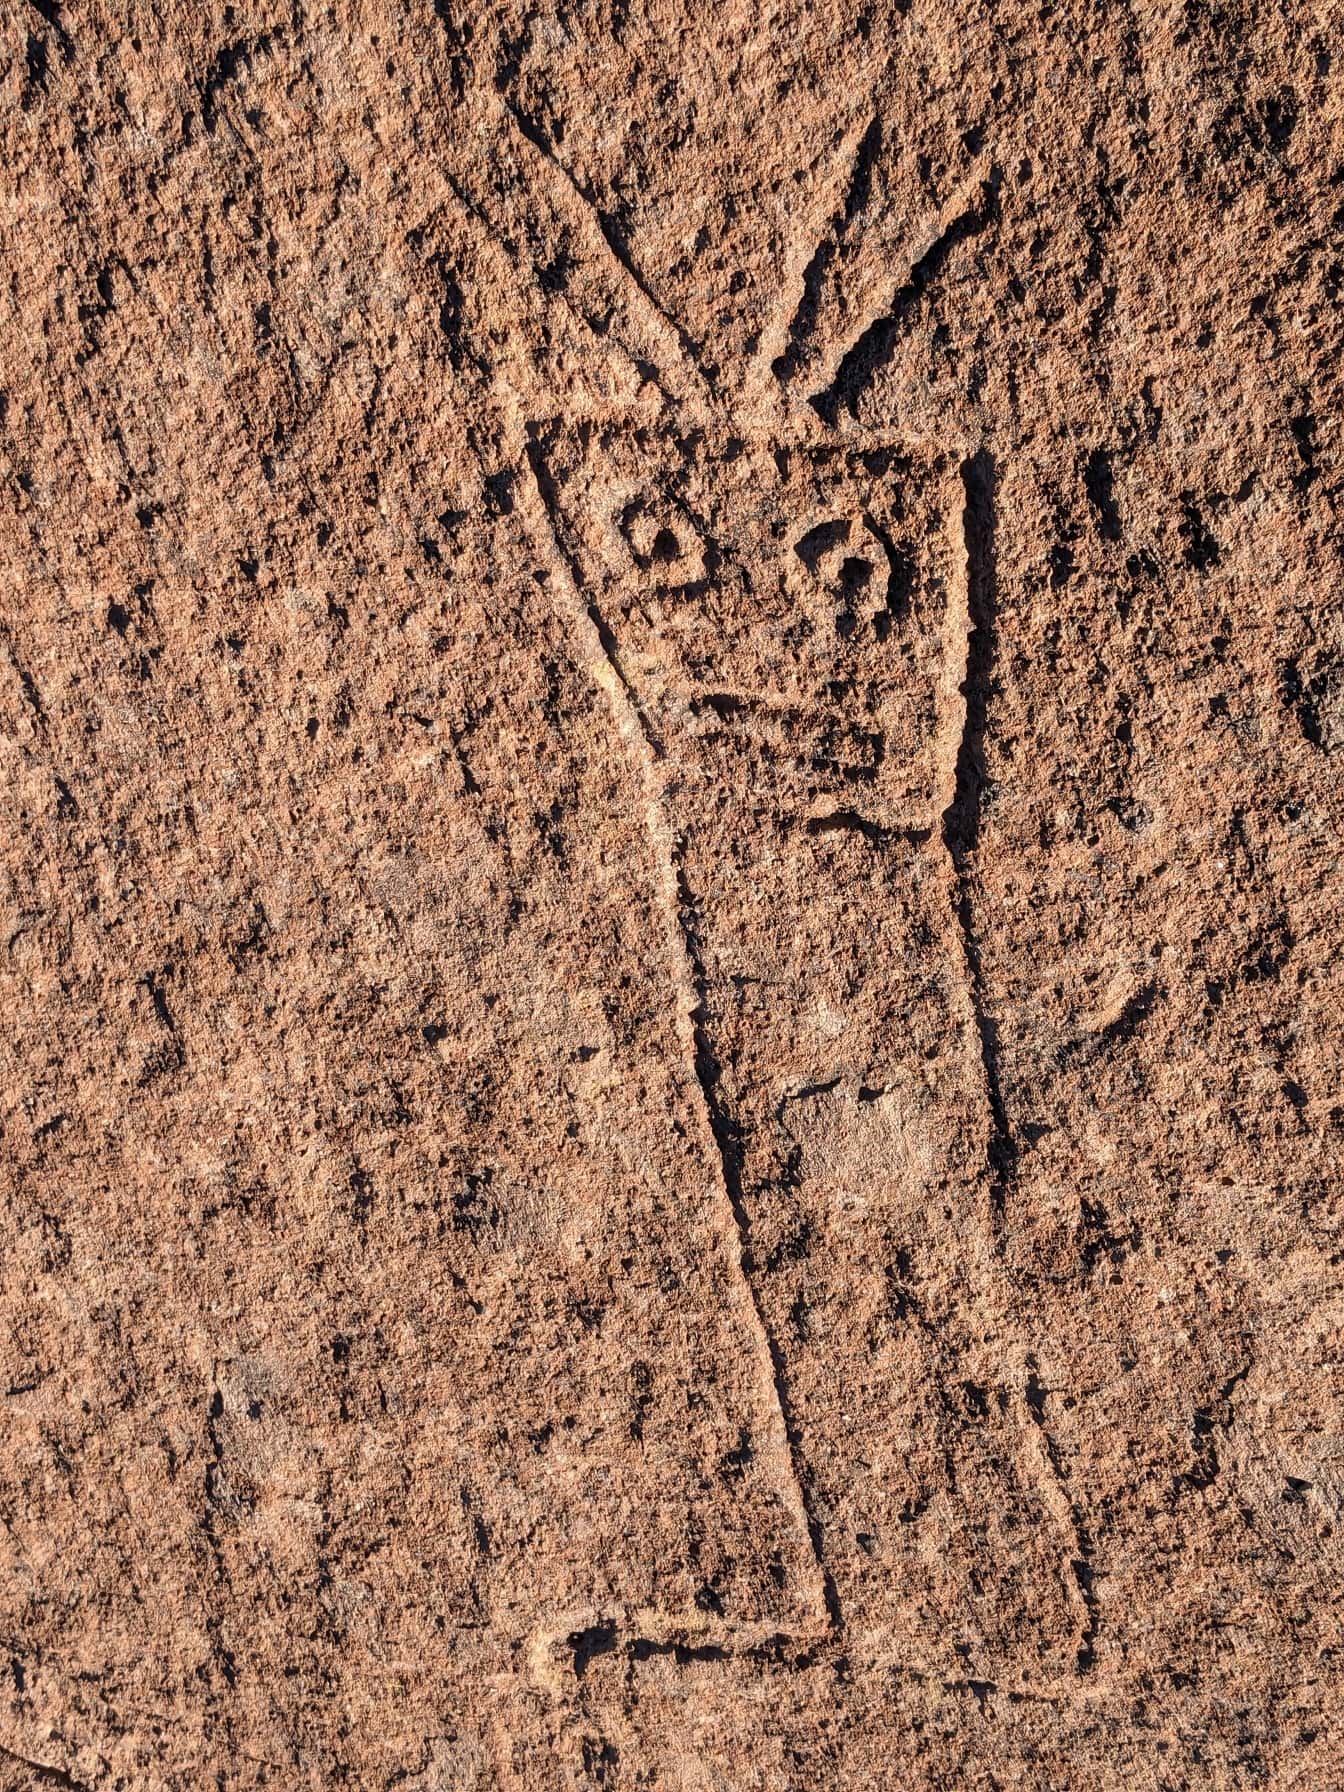 Az ősi naiv kőfaragványok, petroglifák Dél-Amerikában a neolit időszakból származhatnak